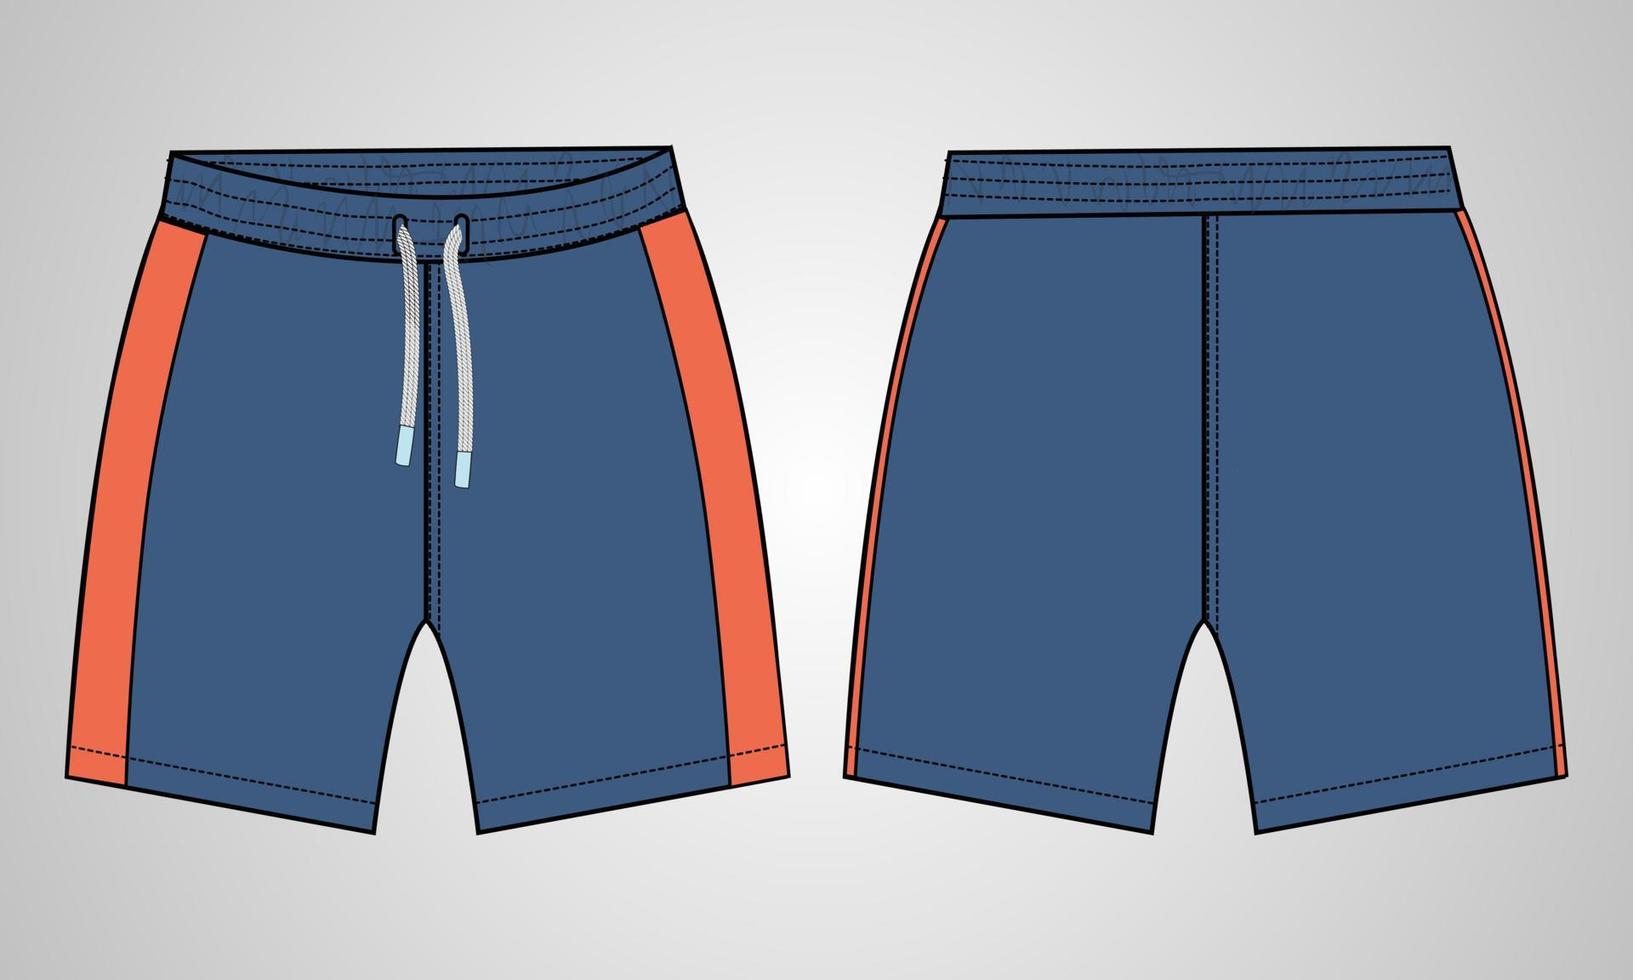 pantalones cortos técnica moda boceto plano vector ilustración plantilla